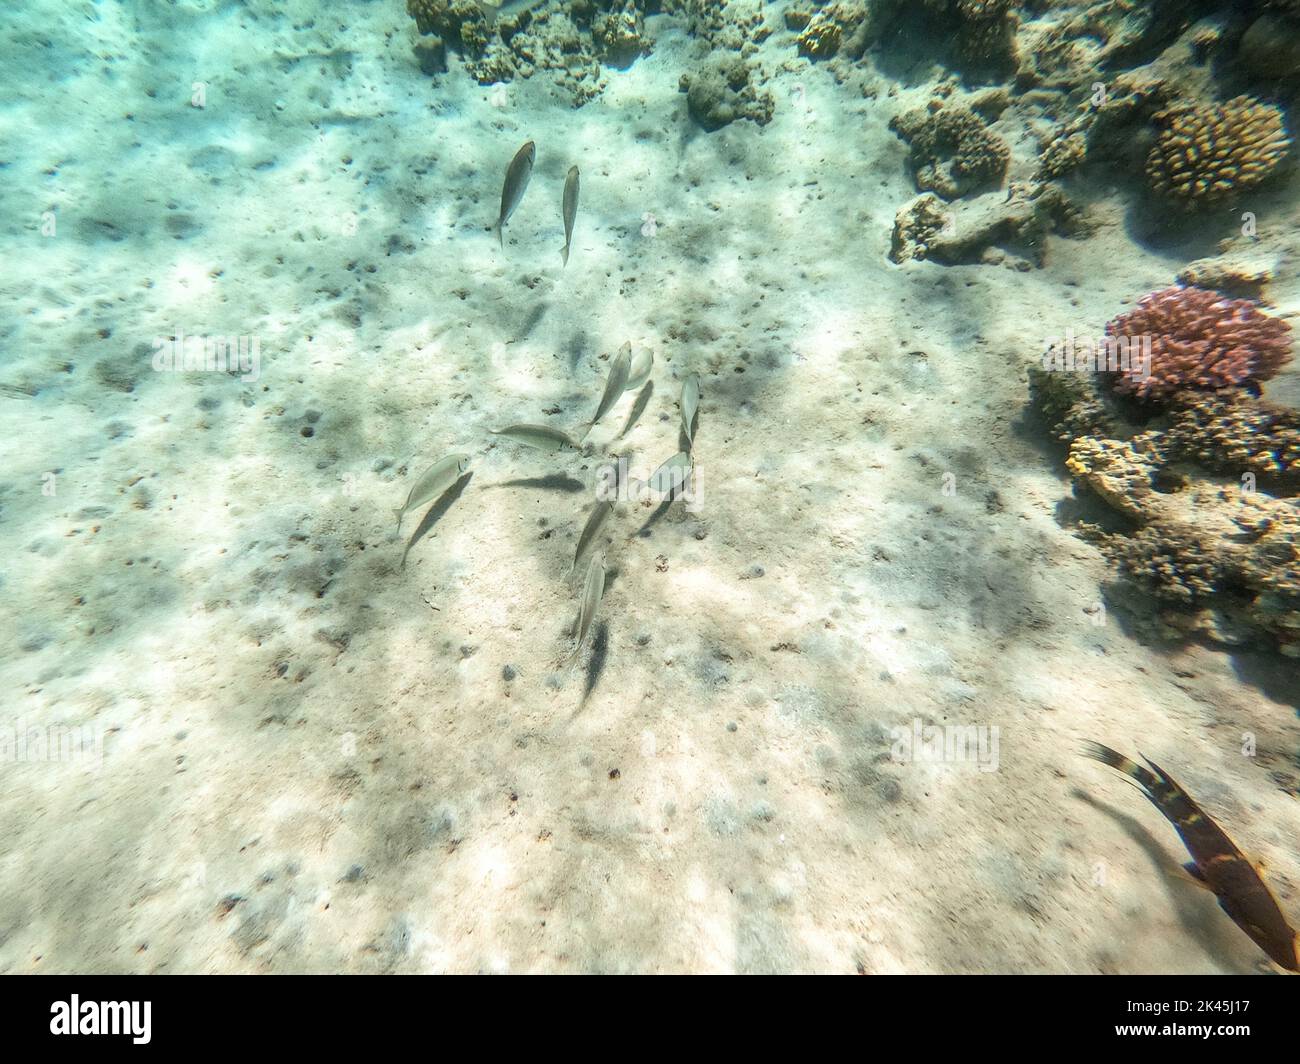 Chorizo de sargos o dorada blanca conocido como el pez diplodus Sargus bajo el agua en el arrecife de coral. Vida submarina de arrecife con corales y peces tropicales Foto de stock